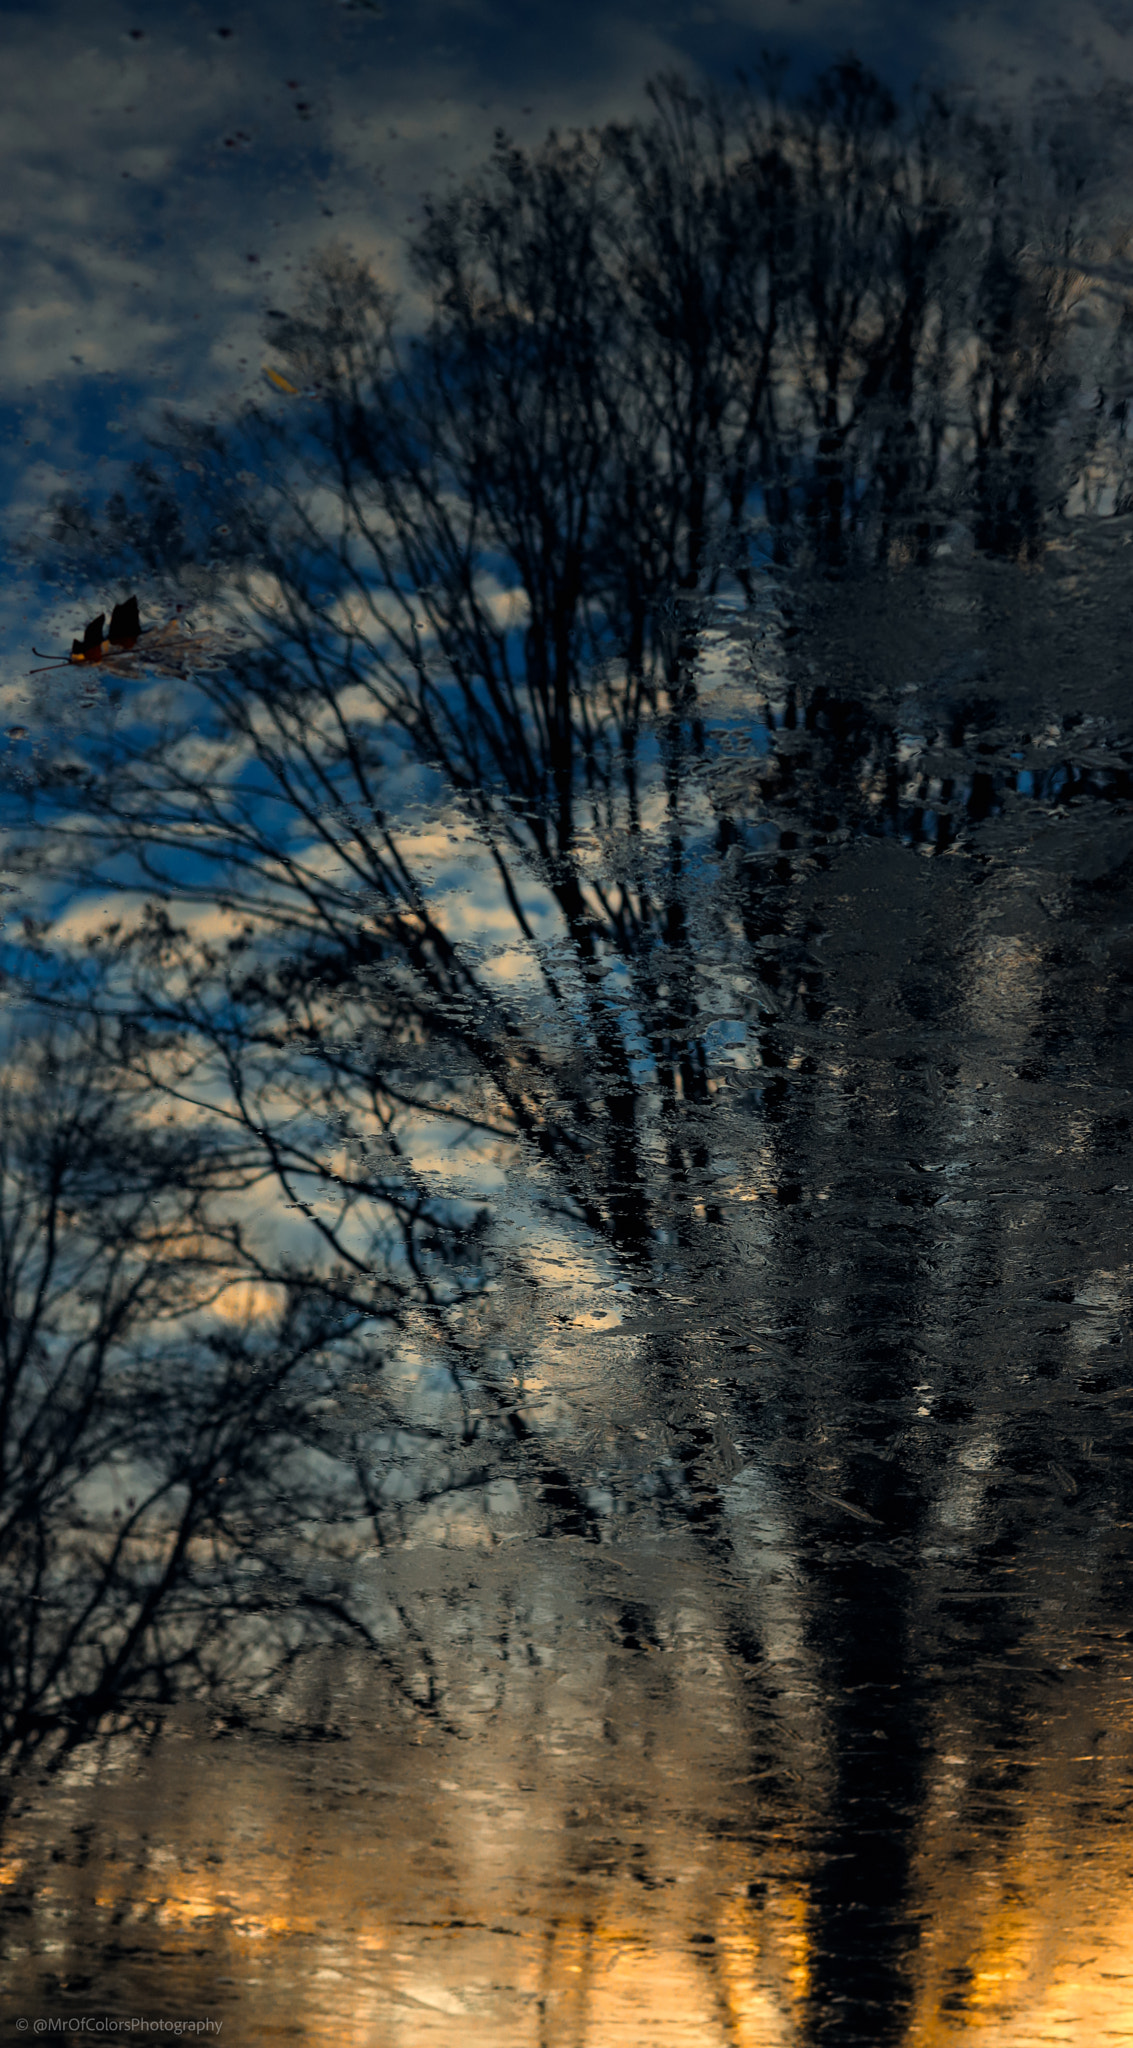 Sundown in Cold Water (11-12-2021) by DillenvanderMolen